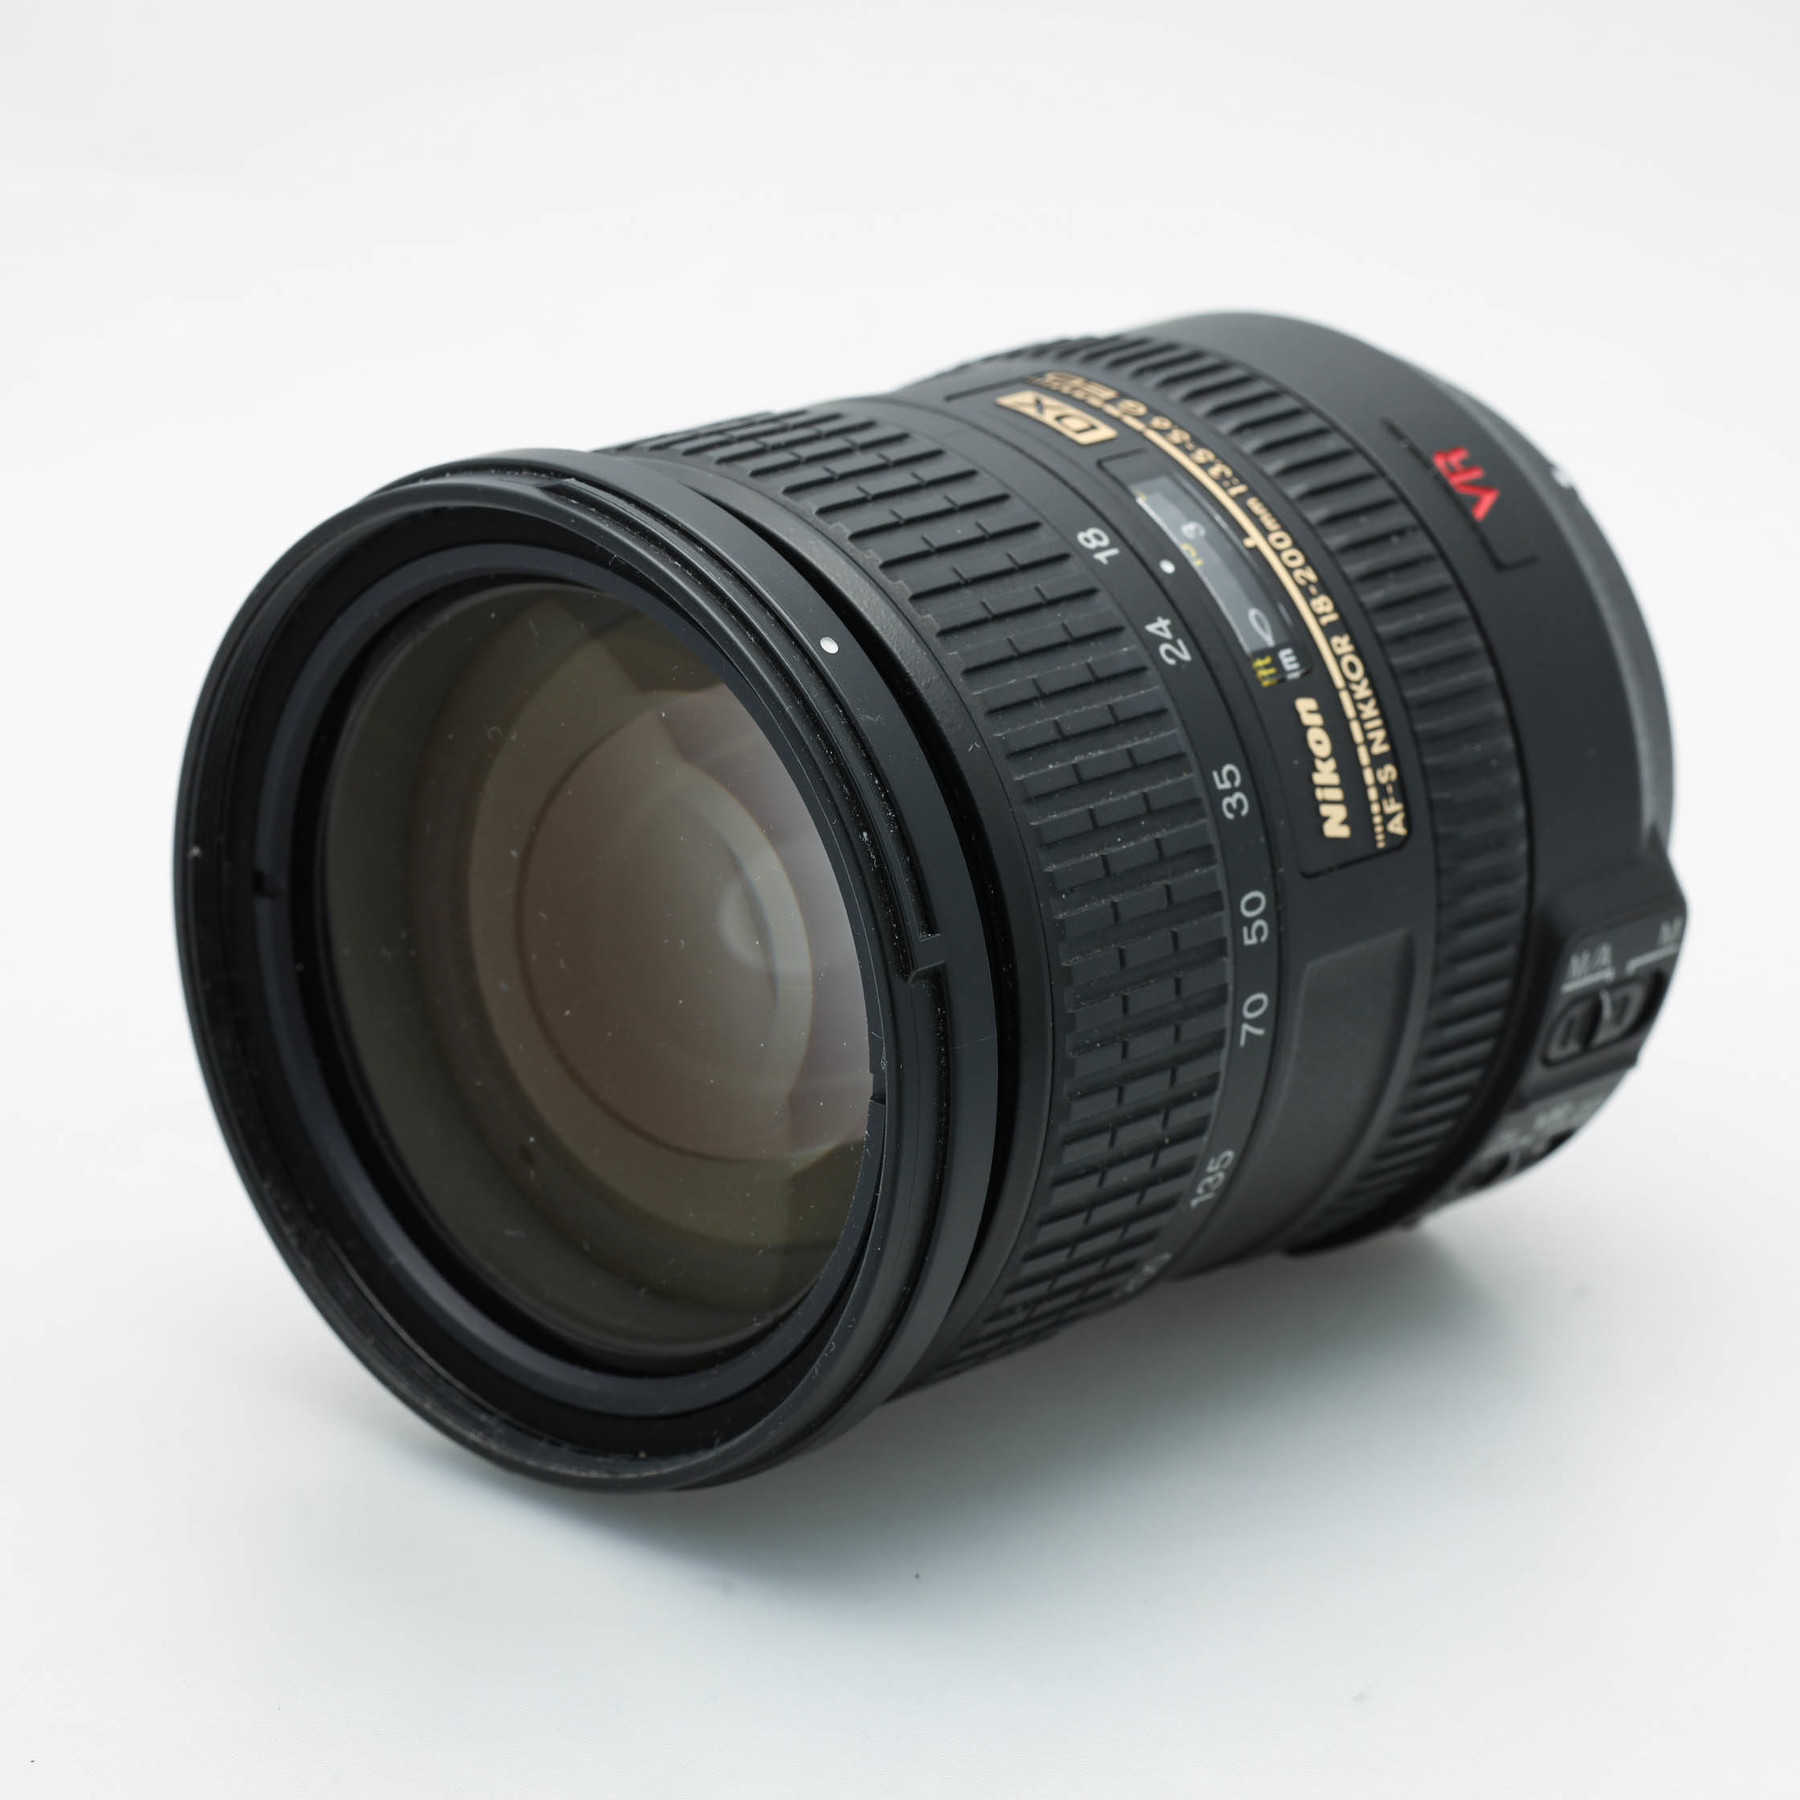 Nikon 18-200mm f/3.5-5.6 G IF ED DX VR AF-S Nikkor